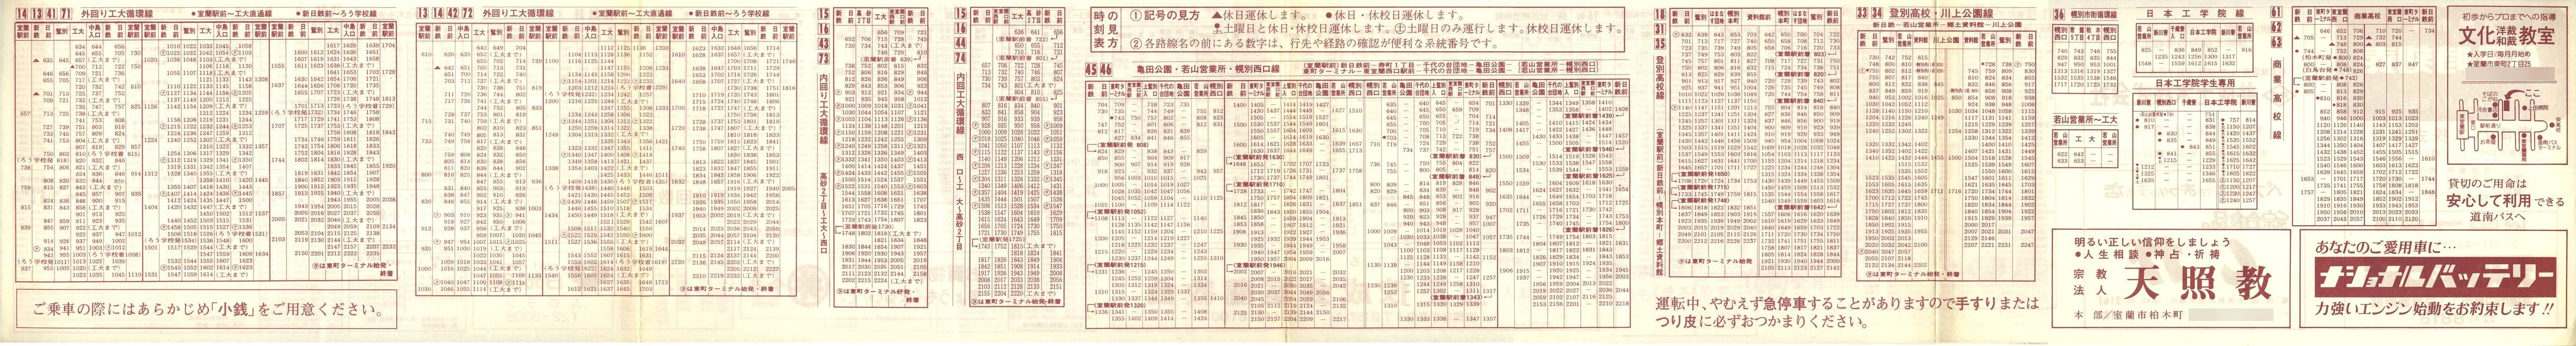 1983-04-03改正_道南バス_室蘭市内線時刻表裏面